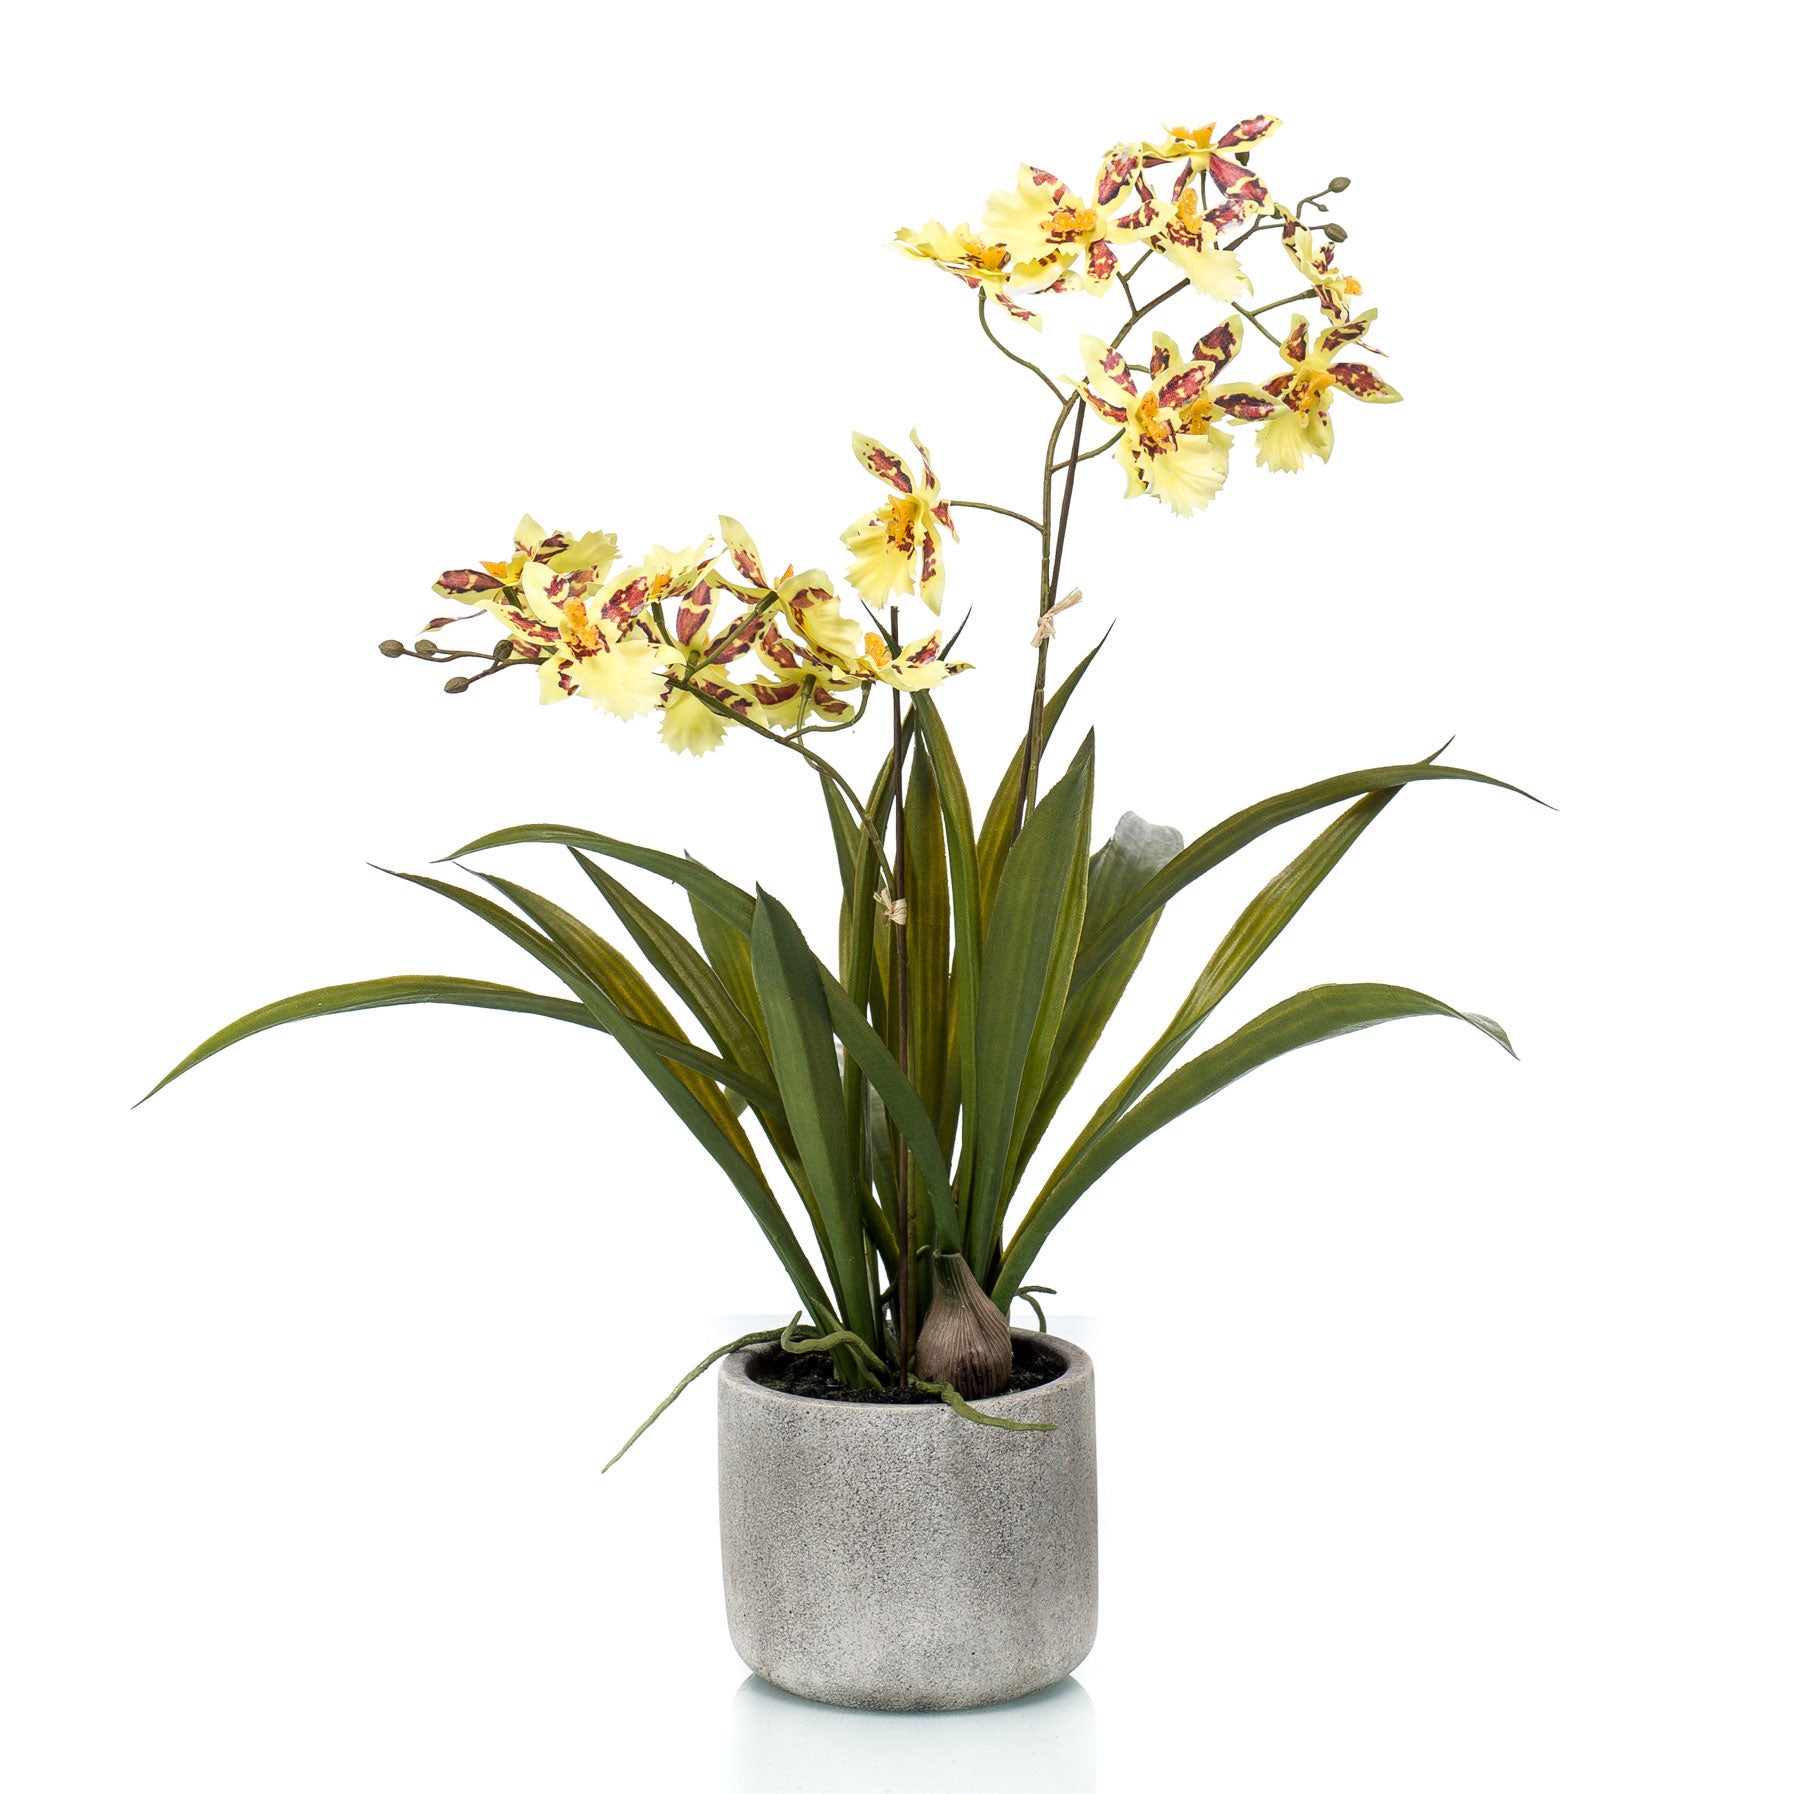 Set de plante et pot, Orchidée jaune de Farmy chez vous